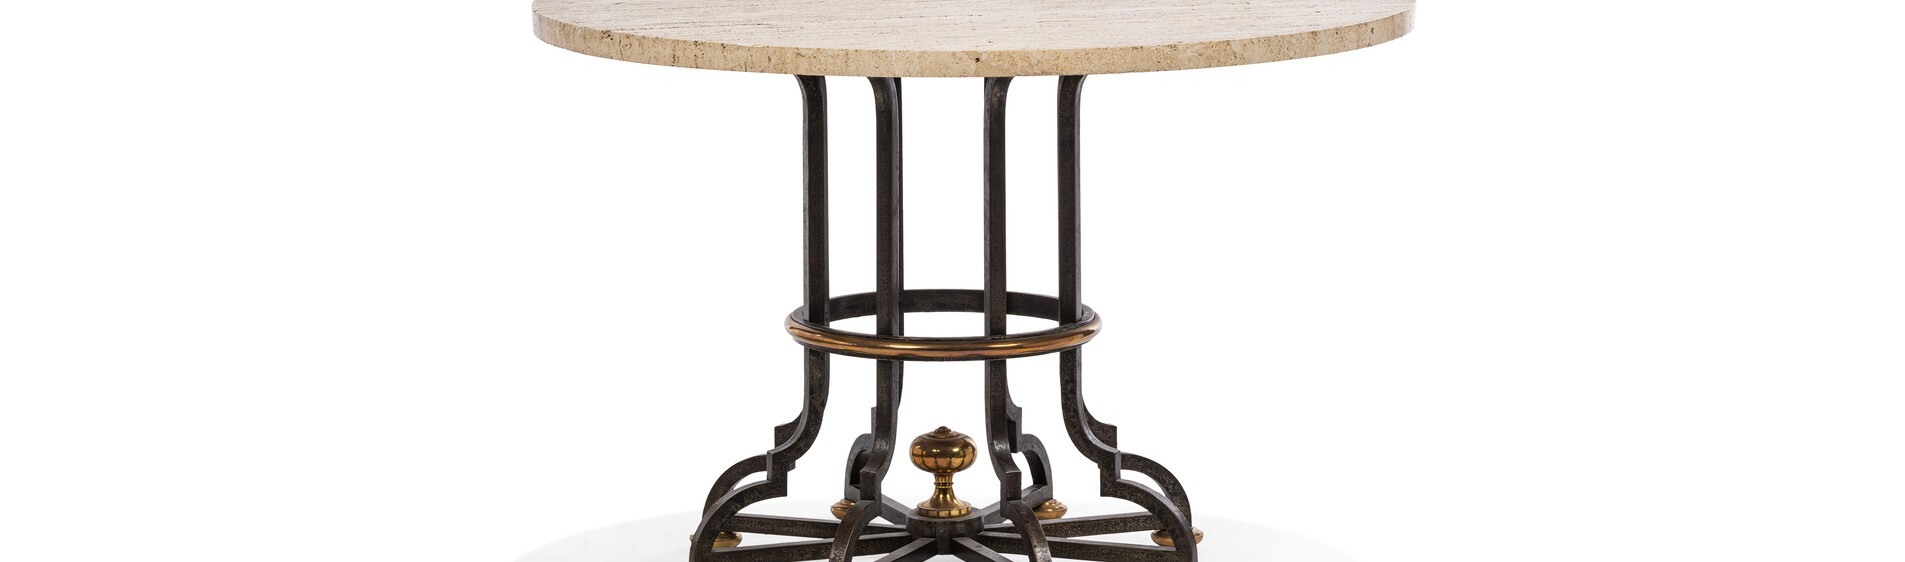 Gilbert poillerat table en fer forgé et marbre du décorateur art déco français